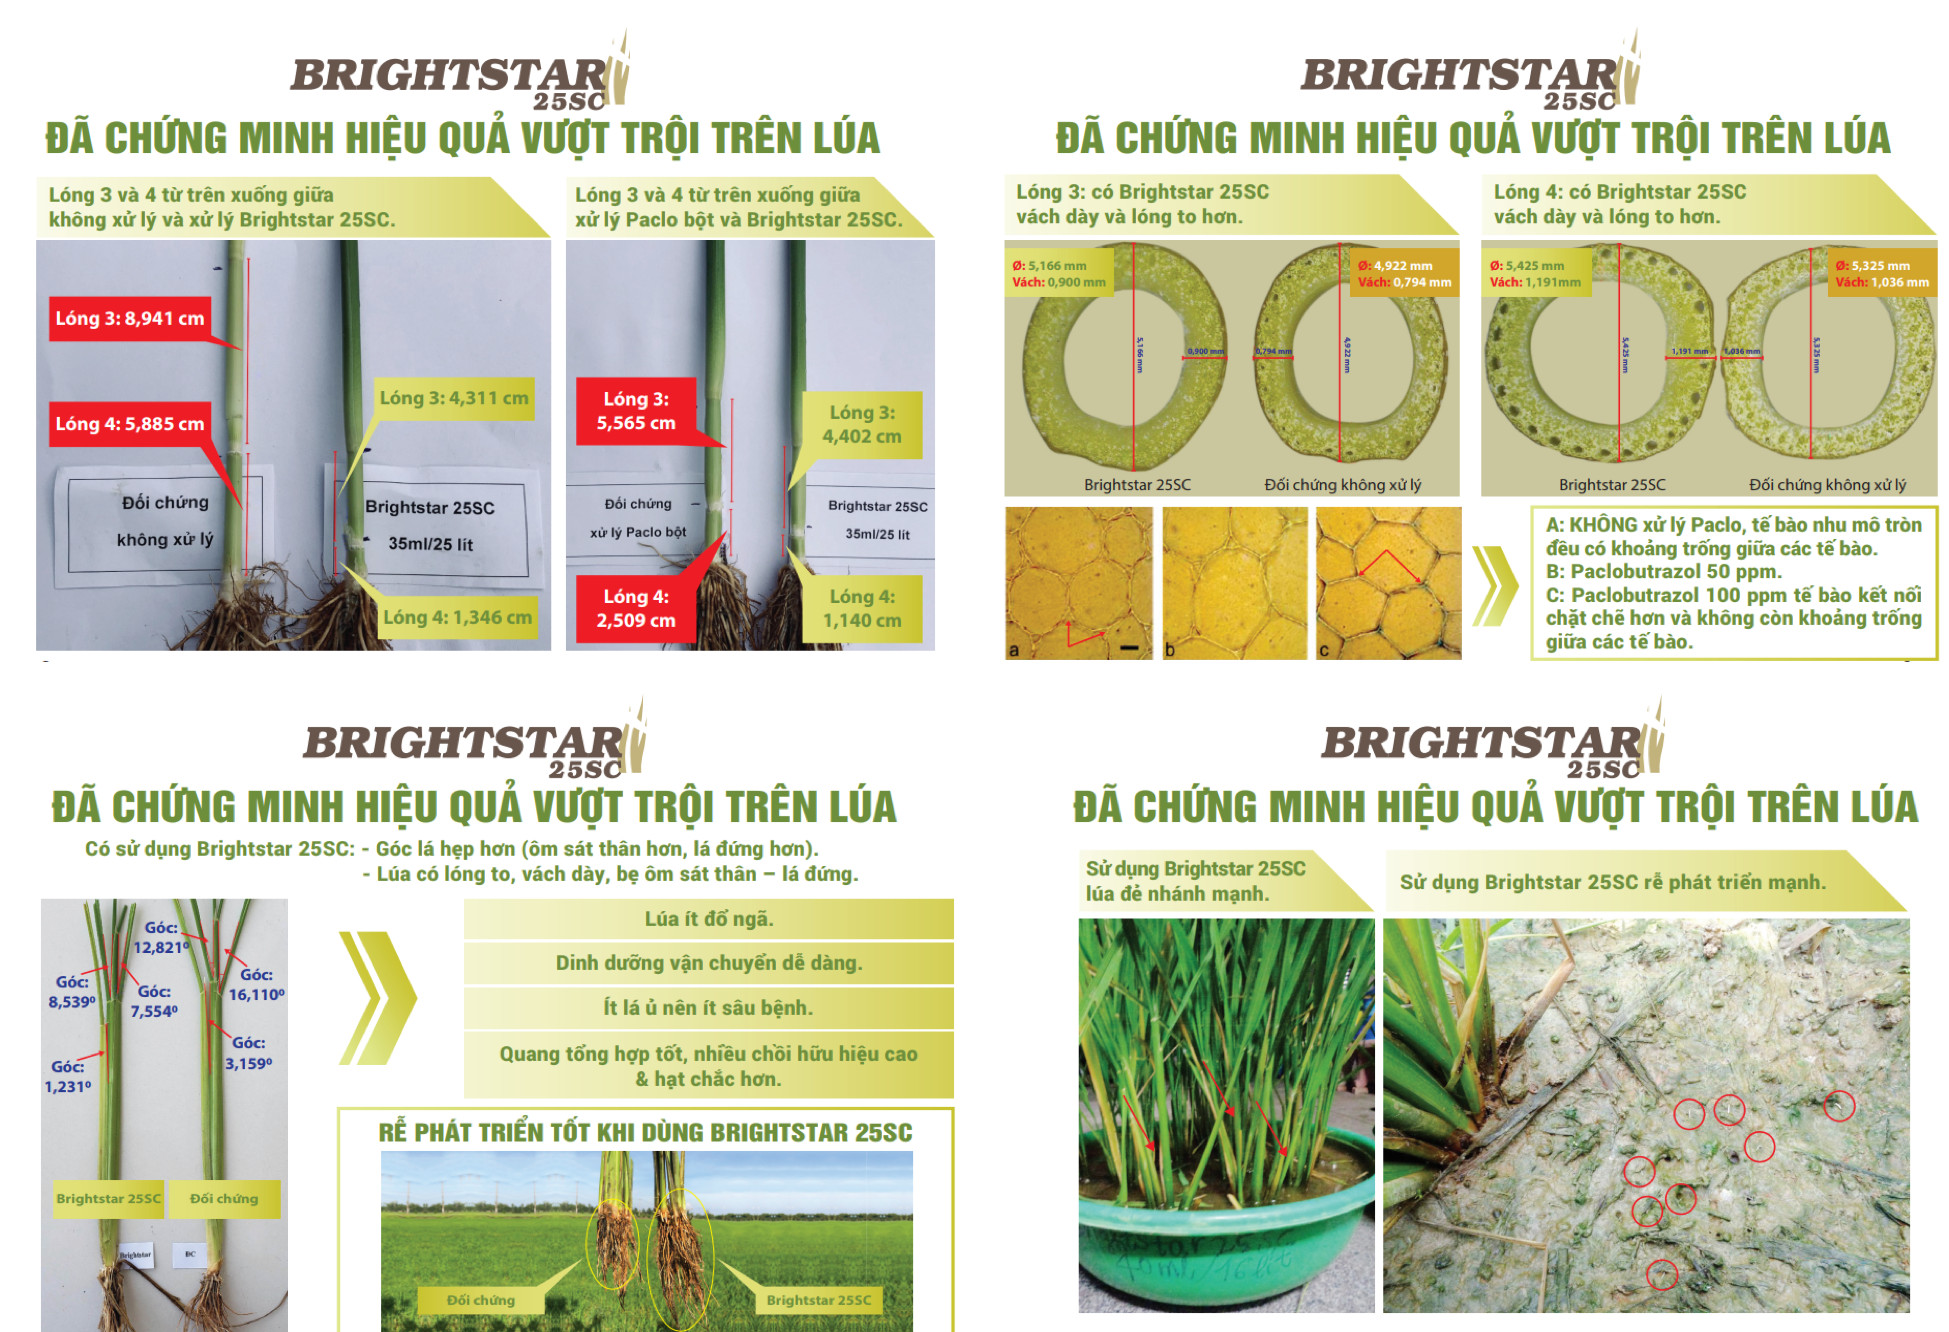 Brighstar 25SC: Giải pháp chống đổ ngã tối ưu, an toàn cho đất và cây trồng - Ảnh 1.